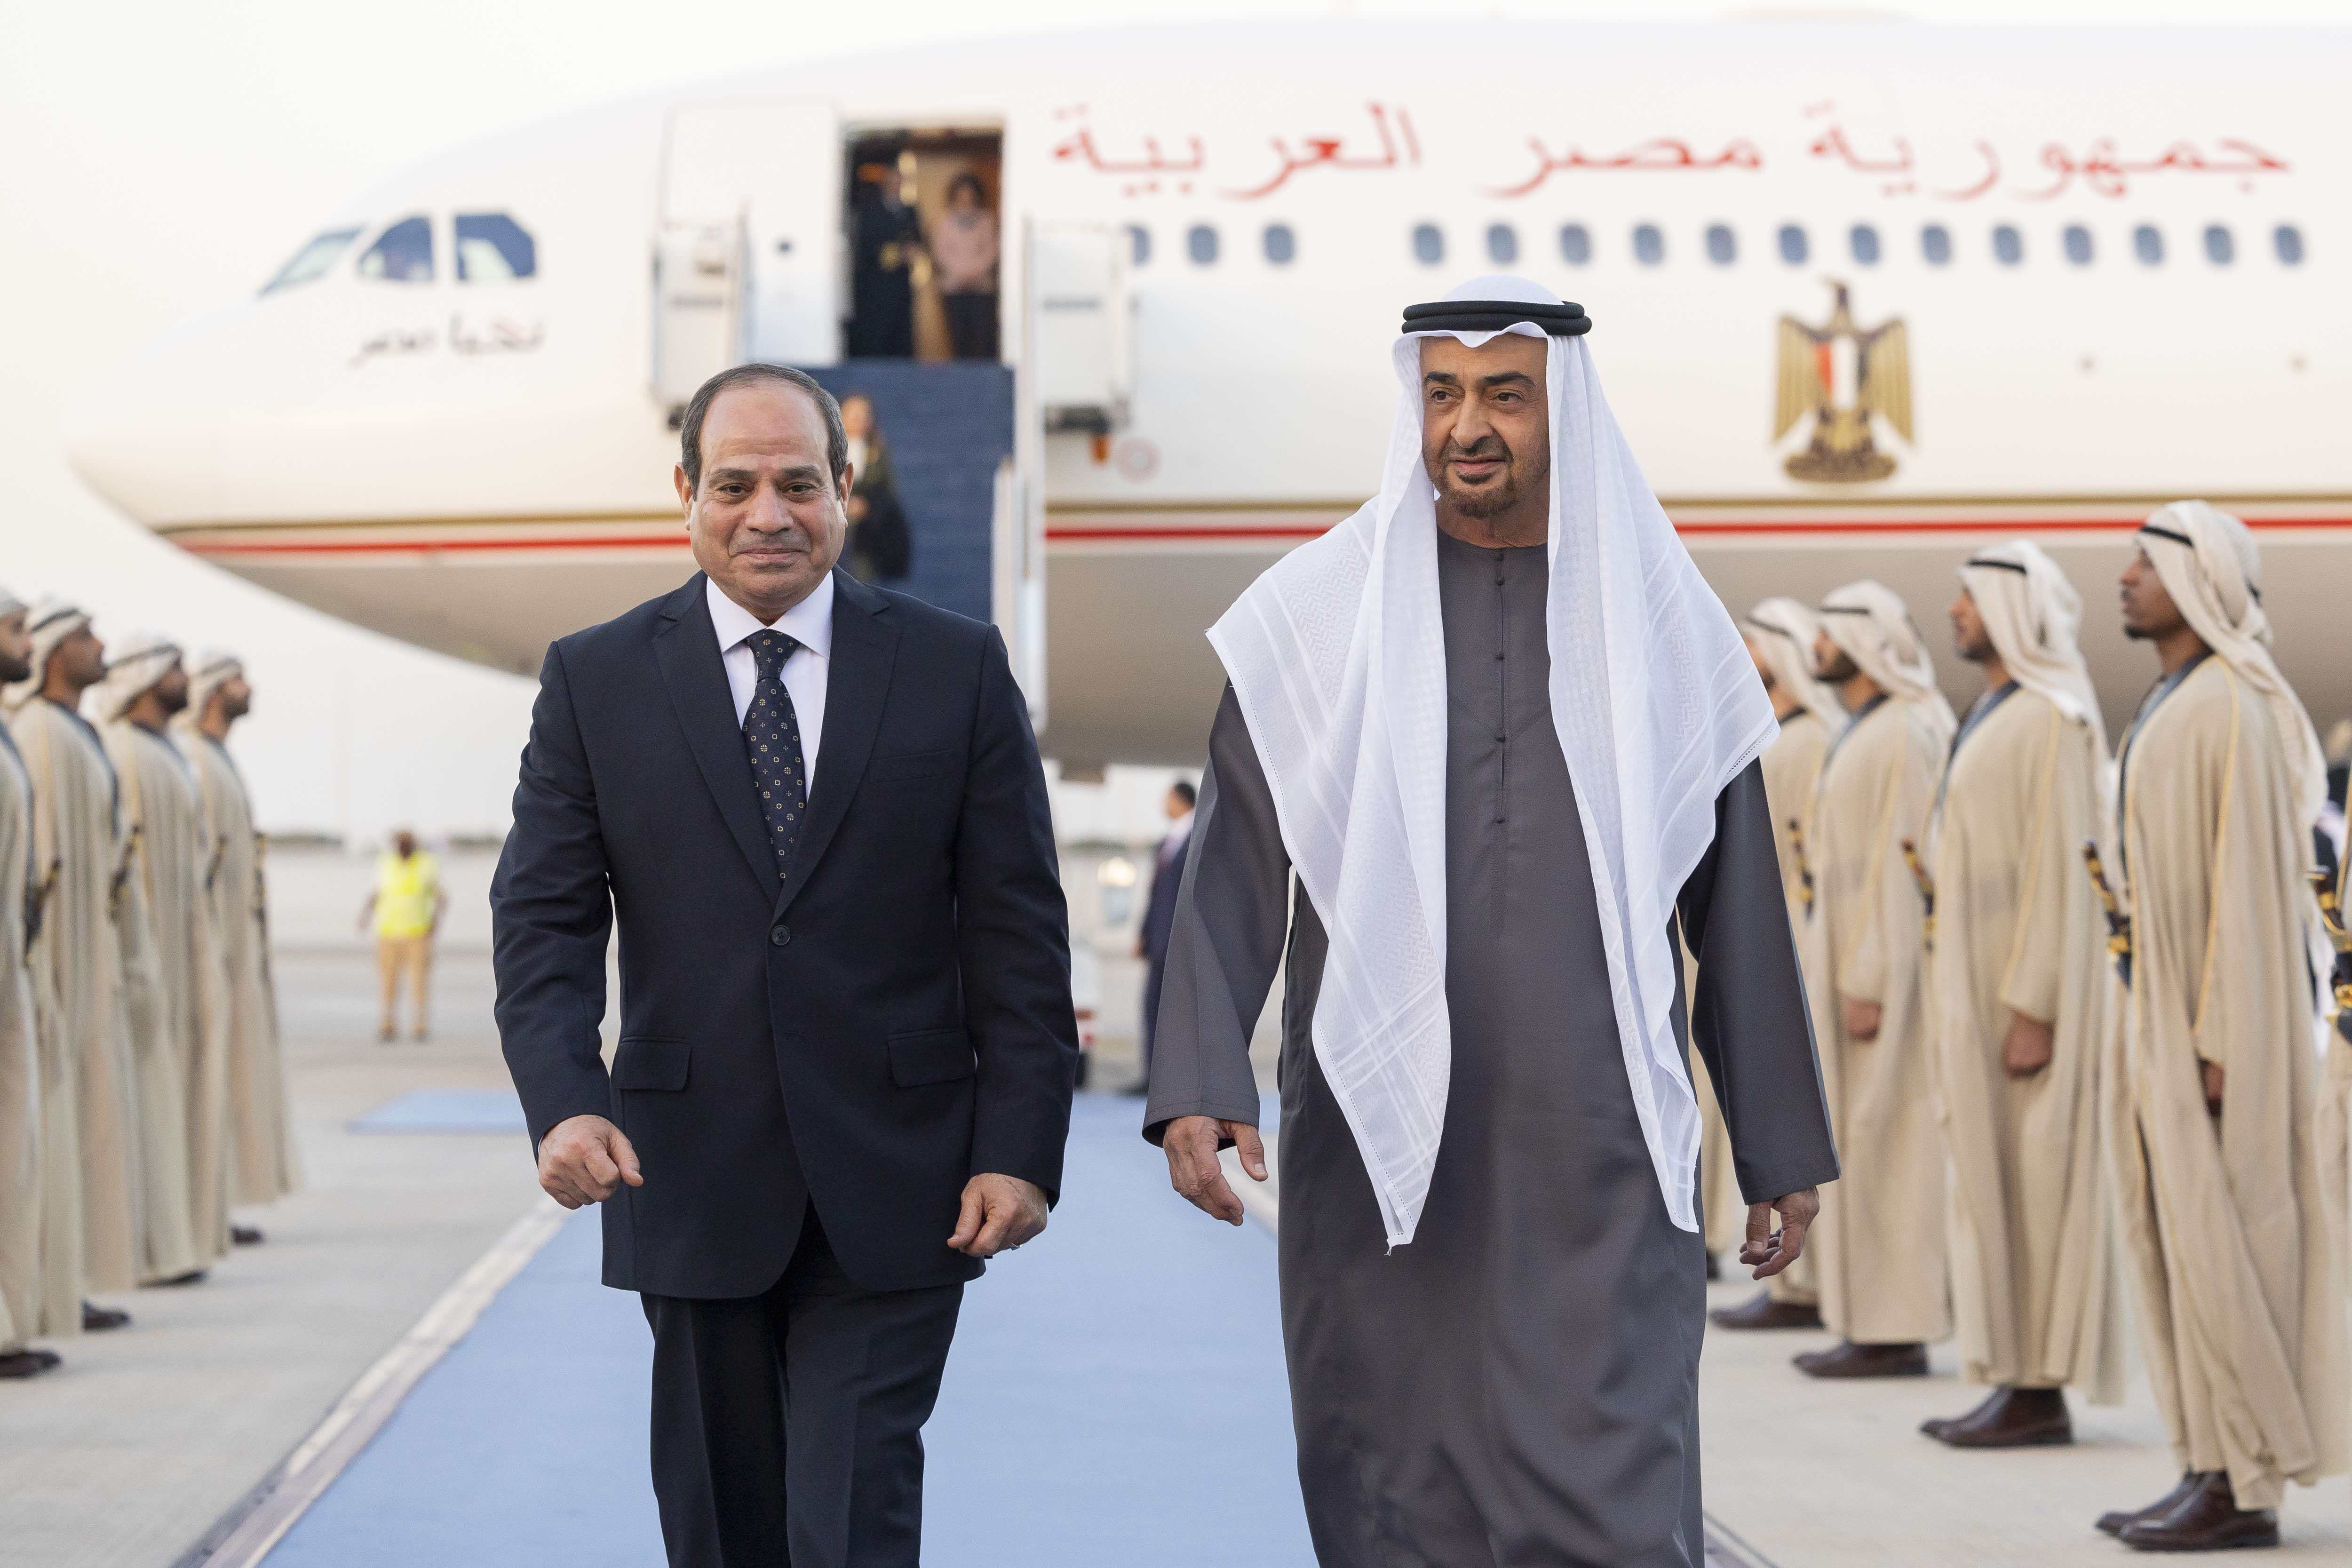 محمد بن زايد يستقبل الرئيس المصري للمشاركة في القمة العالمية للحكومات 2023 بدبي